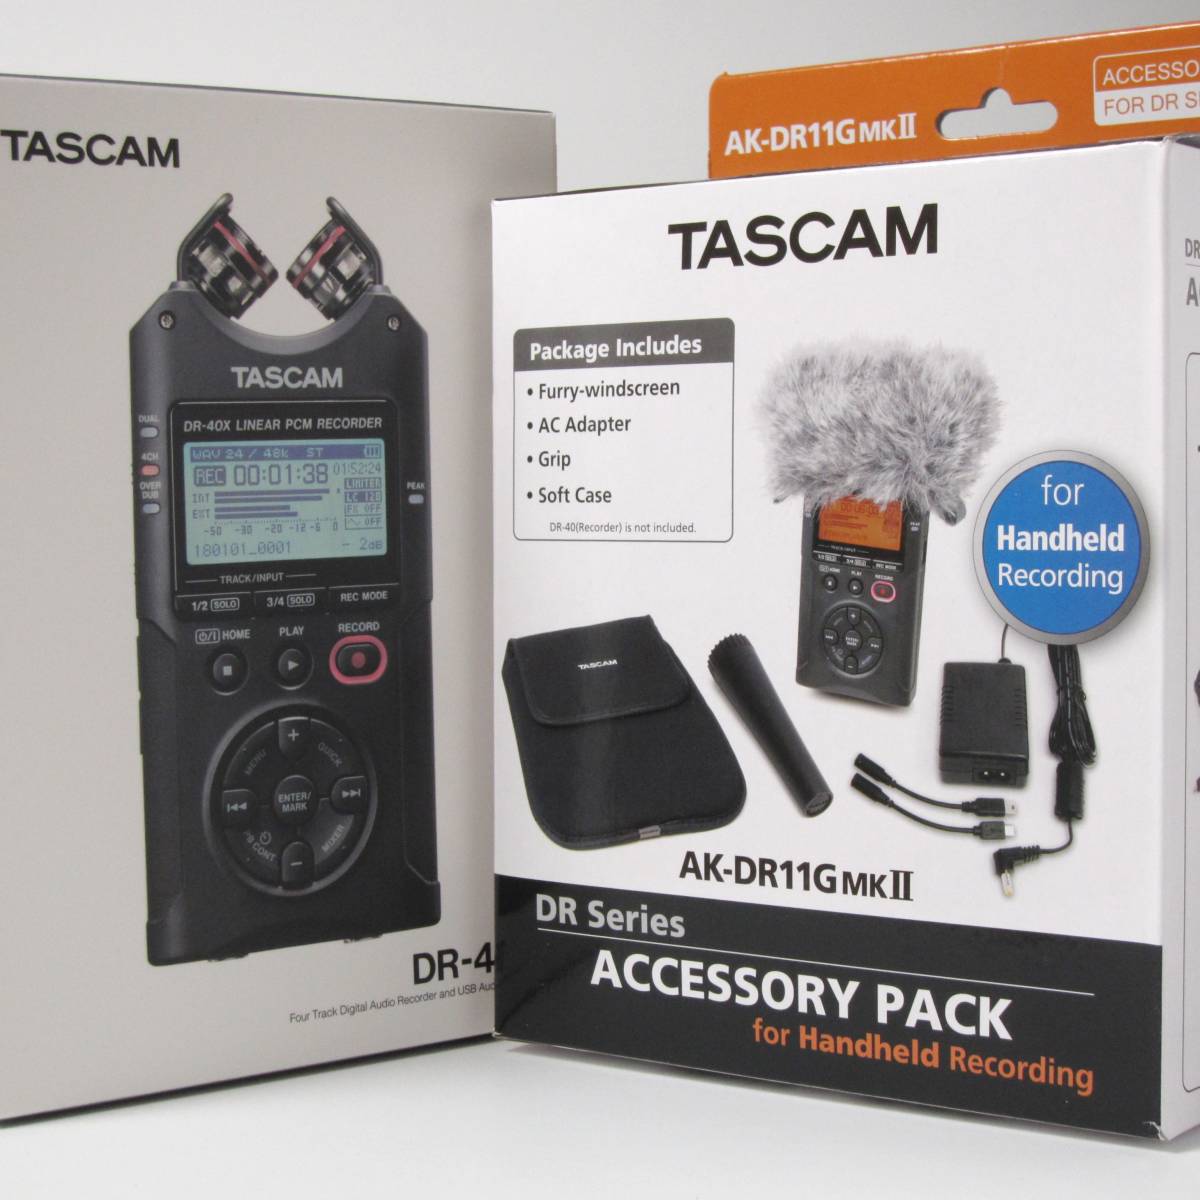 期間限定価格！ TASCAM DR-40X (別売:アクセサリーパック付き) #リニアPCMレコーダー#タスカム#ICレコーダー#